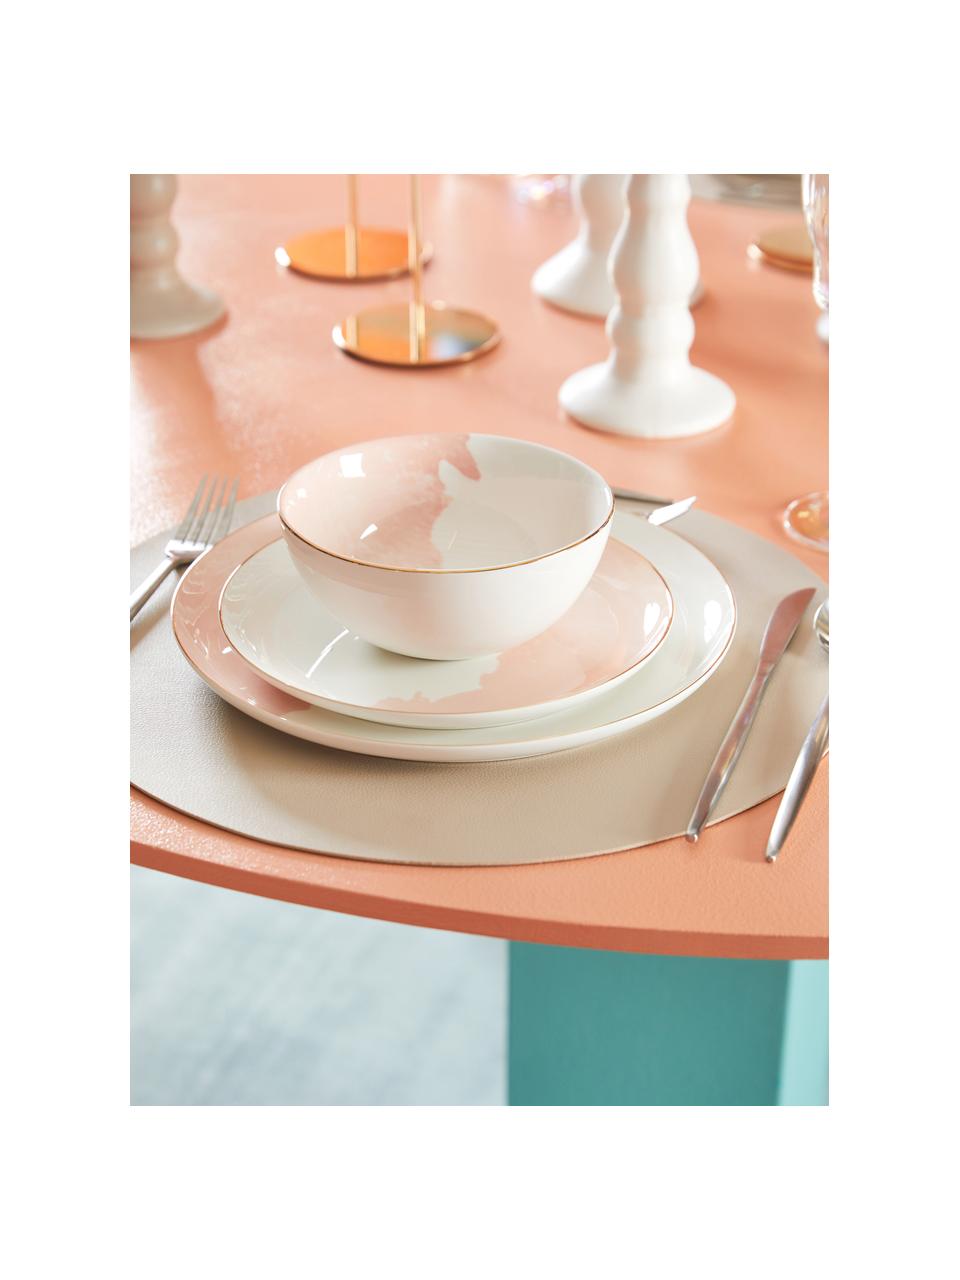 Porcelánový mělký talíř se s abstraktním vzorem a zlatým okrajem Rosie, 2 kusy, Porcelán, Bílá, růžová, Ø 26 cm, V 2 cm